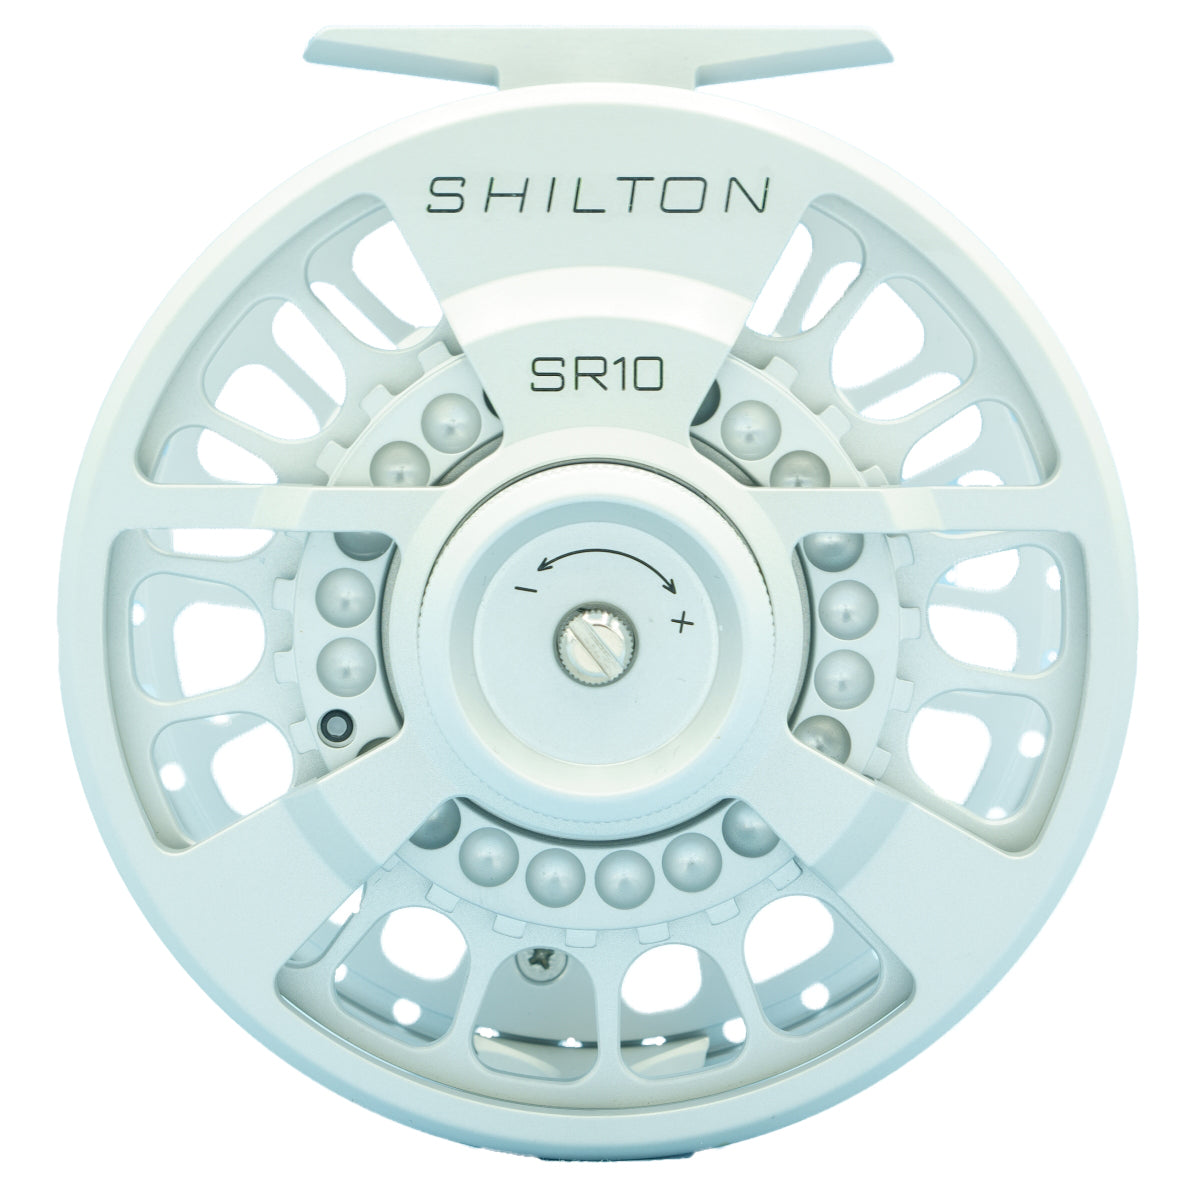 Shilton SR10 (10-11wt) Reel Titanium Left Hand – Madison River